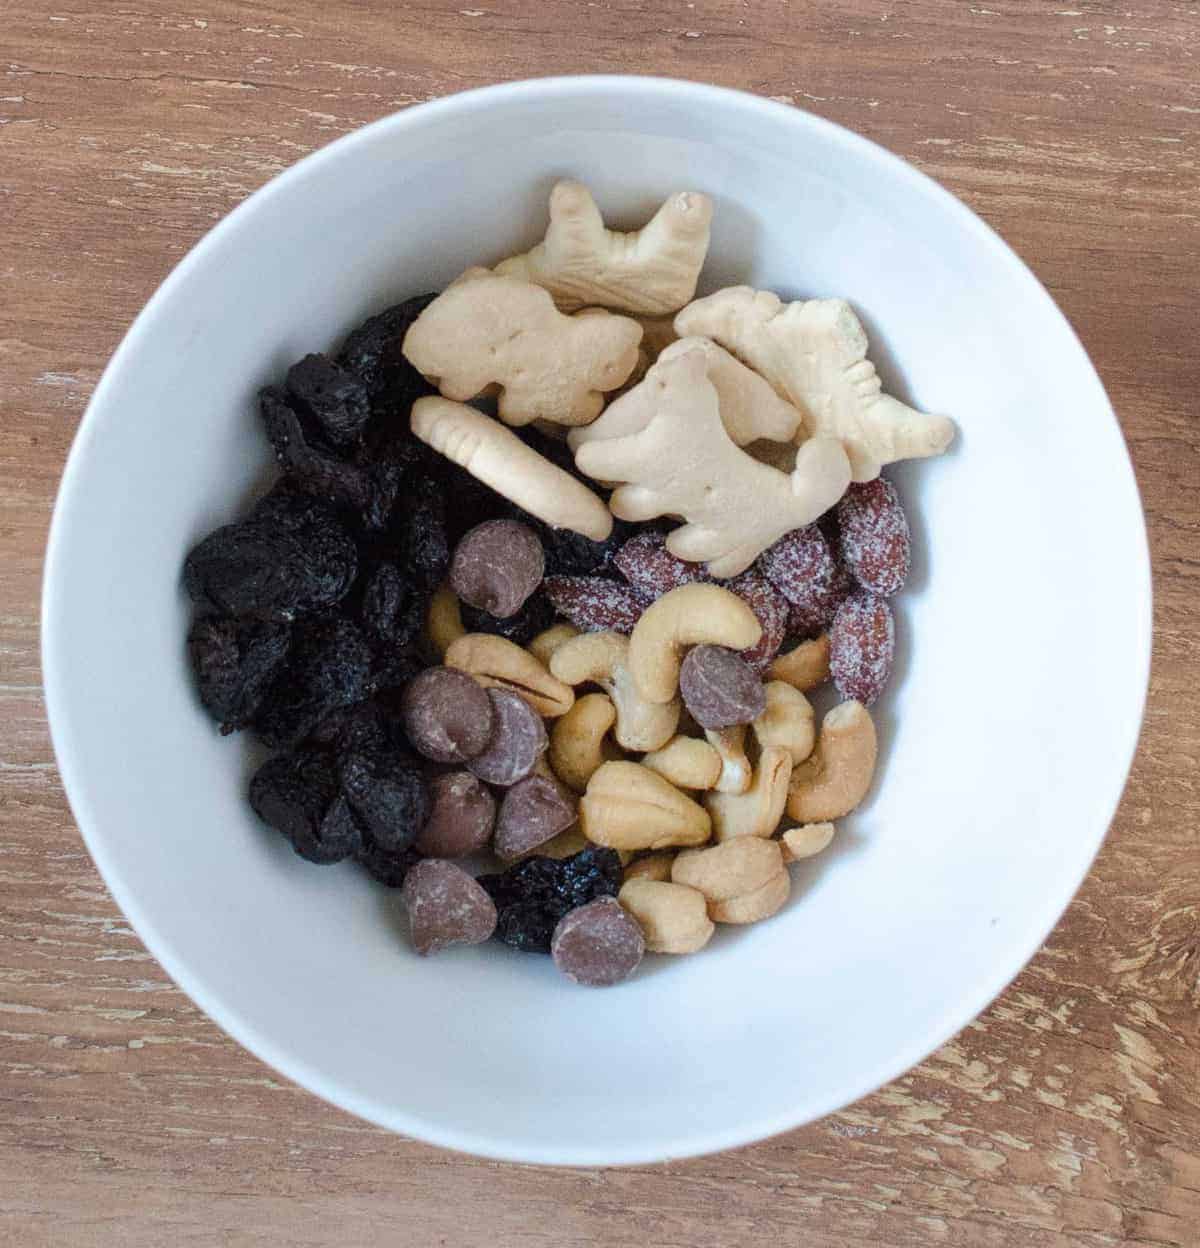 Mezcla de frutos secos: cerezas secas, almendras tostadas con miel, chispas de chocolate con leche, anacardos y galletas de animales.